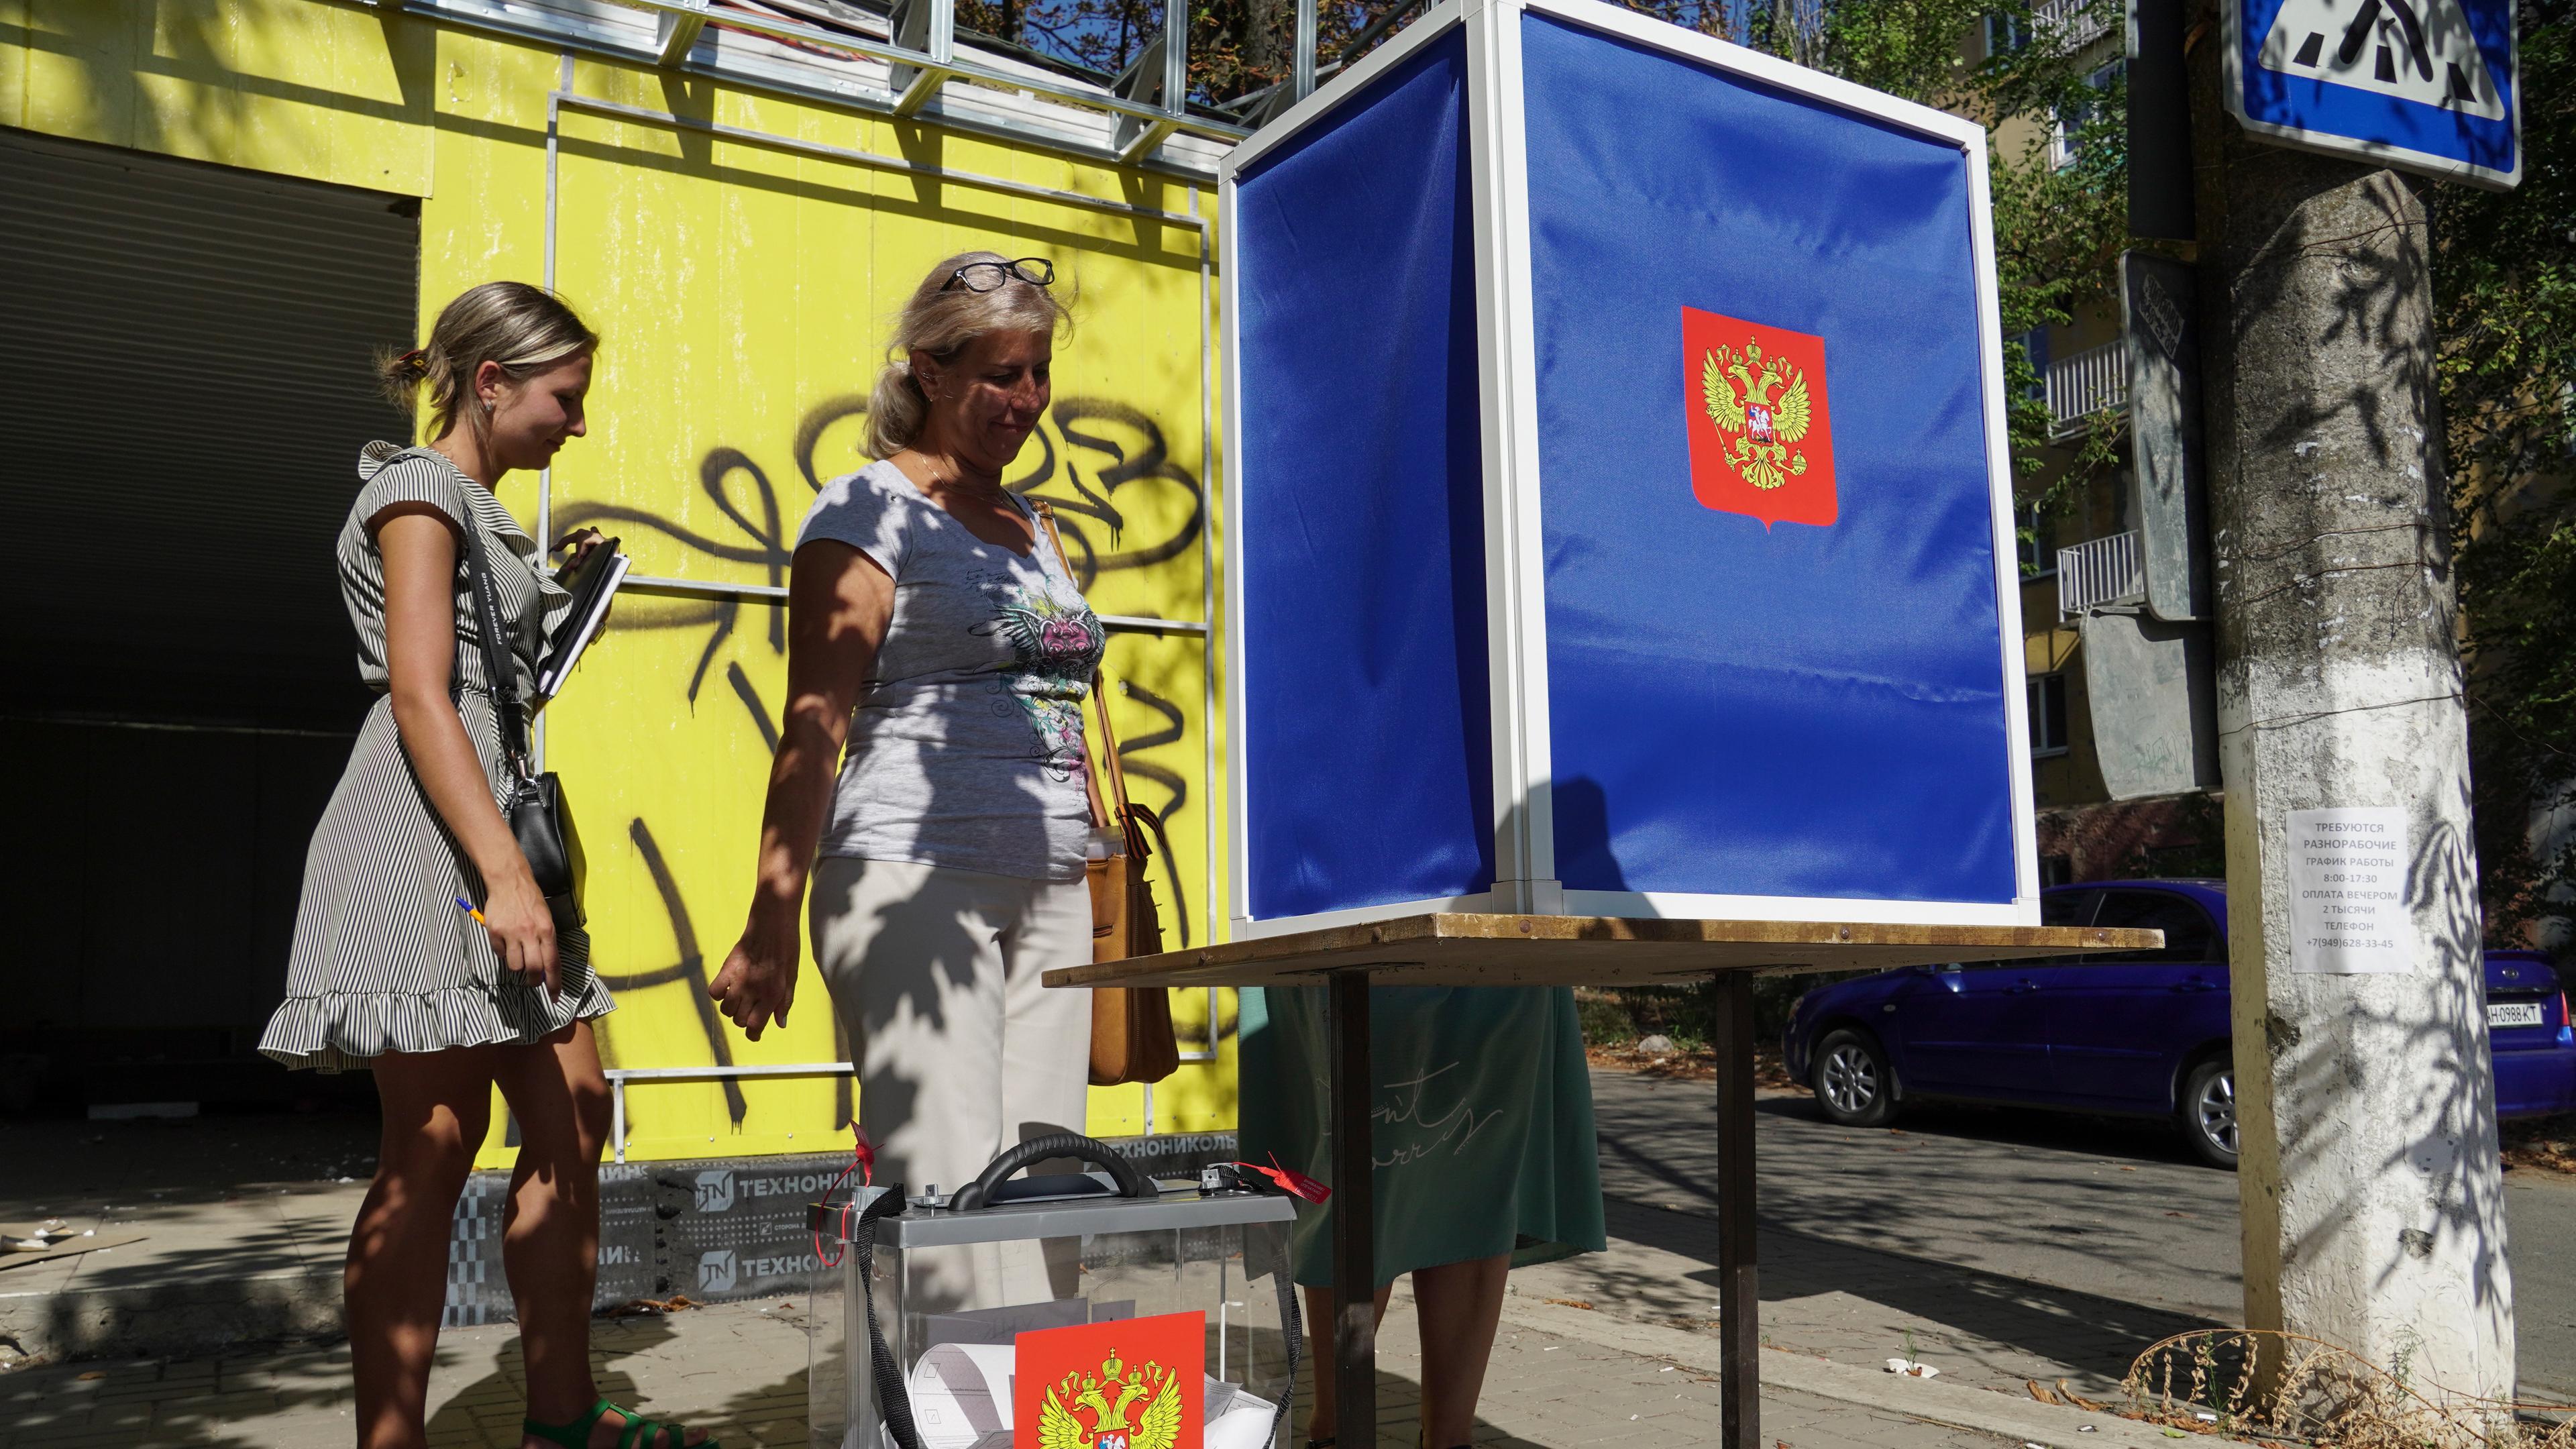 Frauen geben ihre Stimmen in einem mobilen Wahllokal mit dem Wappen Russlands während der vorgezogenen Stimmabgabe für die Kommunalwahlen in Mariupol, aufgenommen am 31.08.2023 